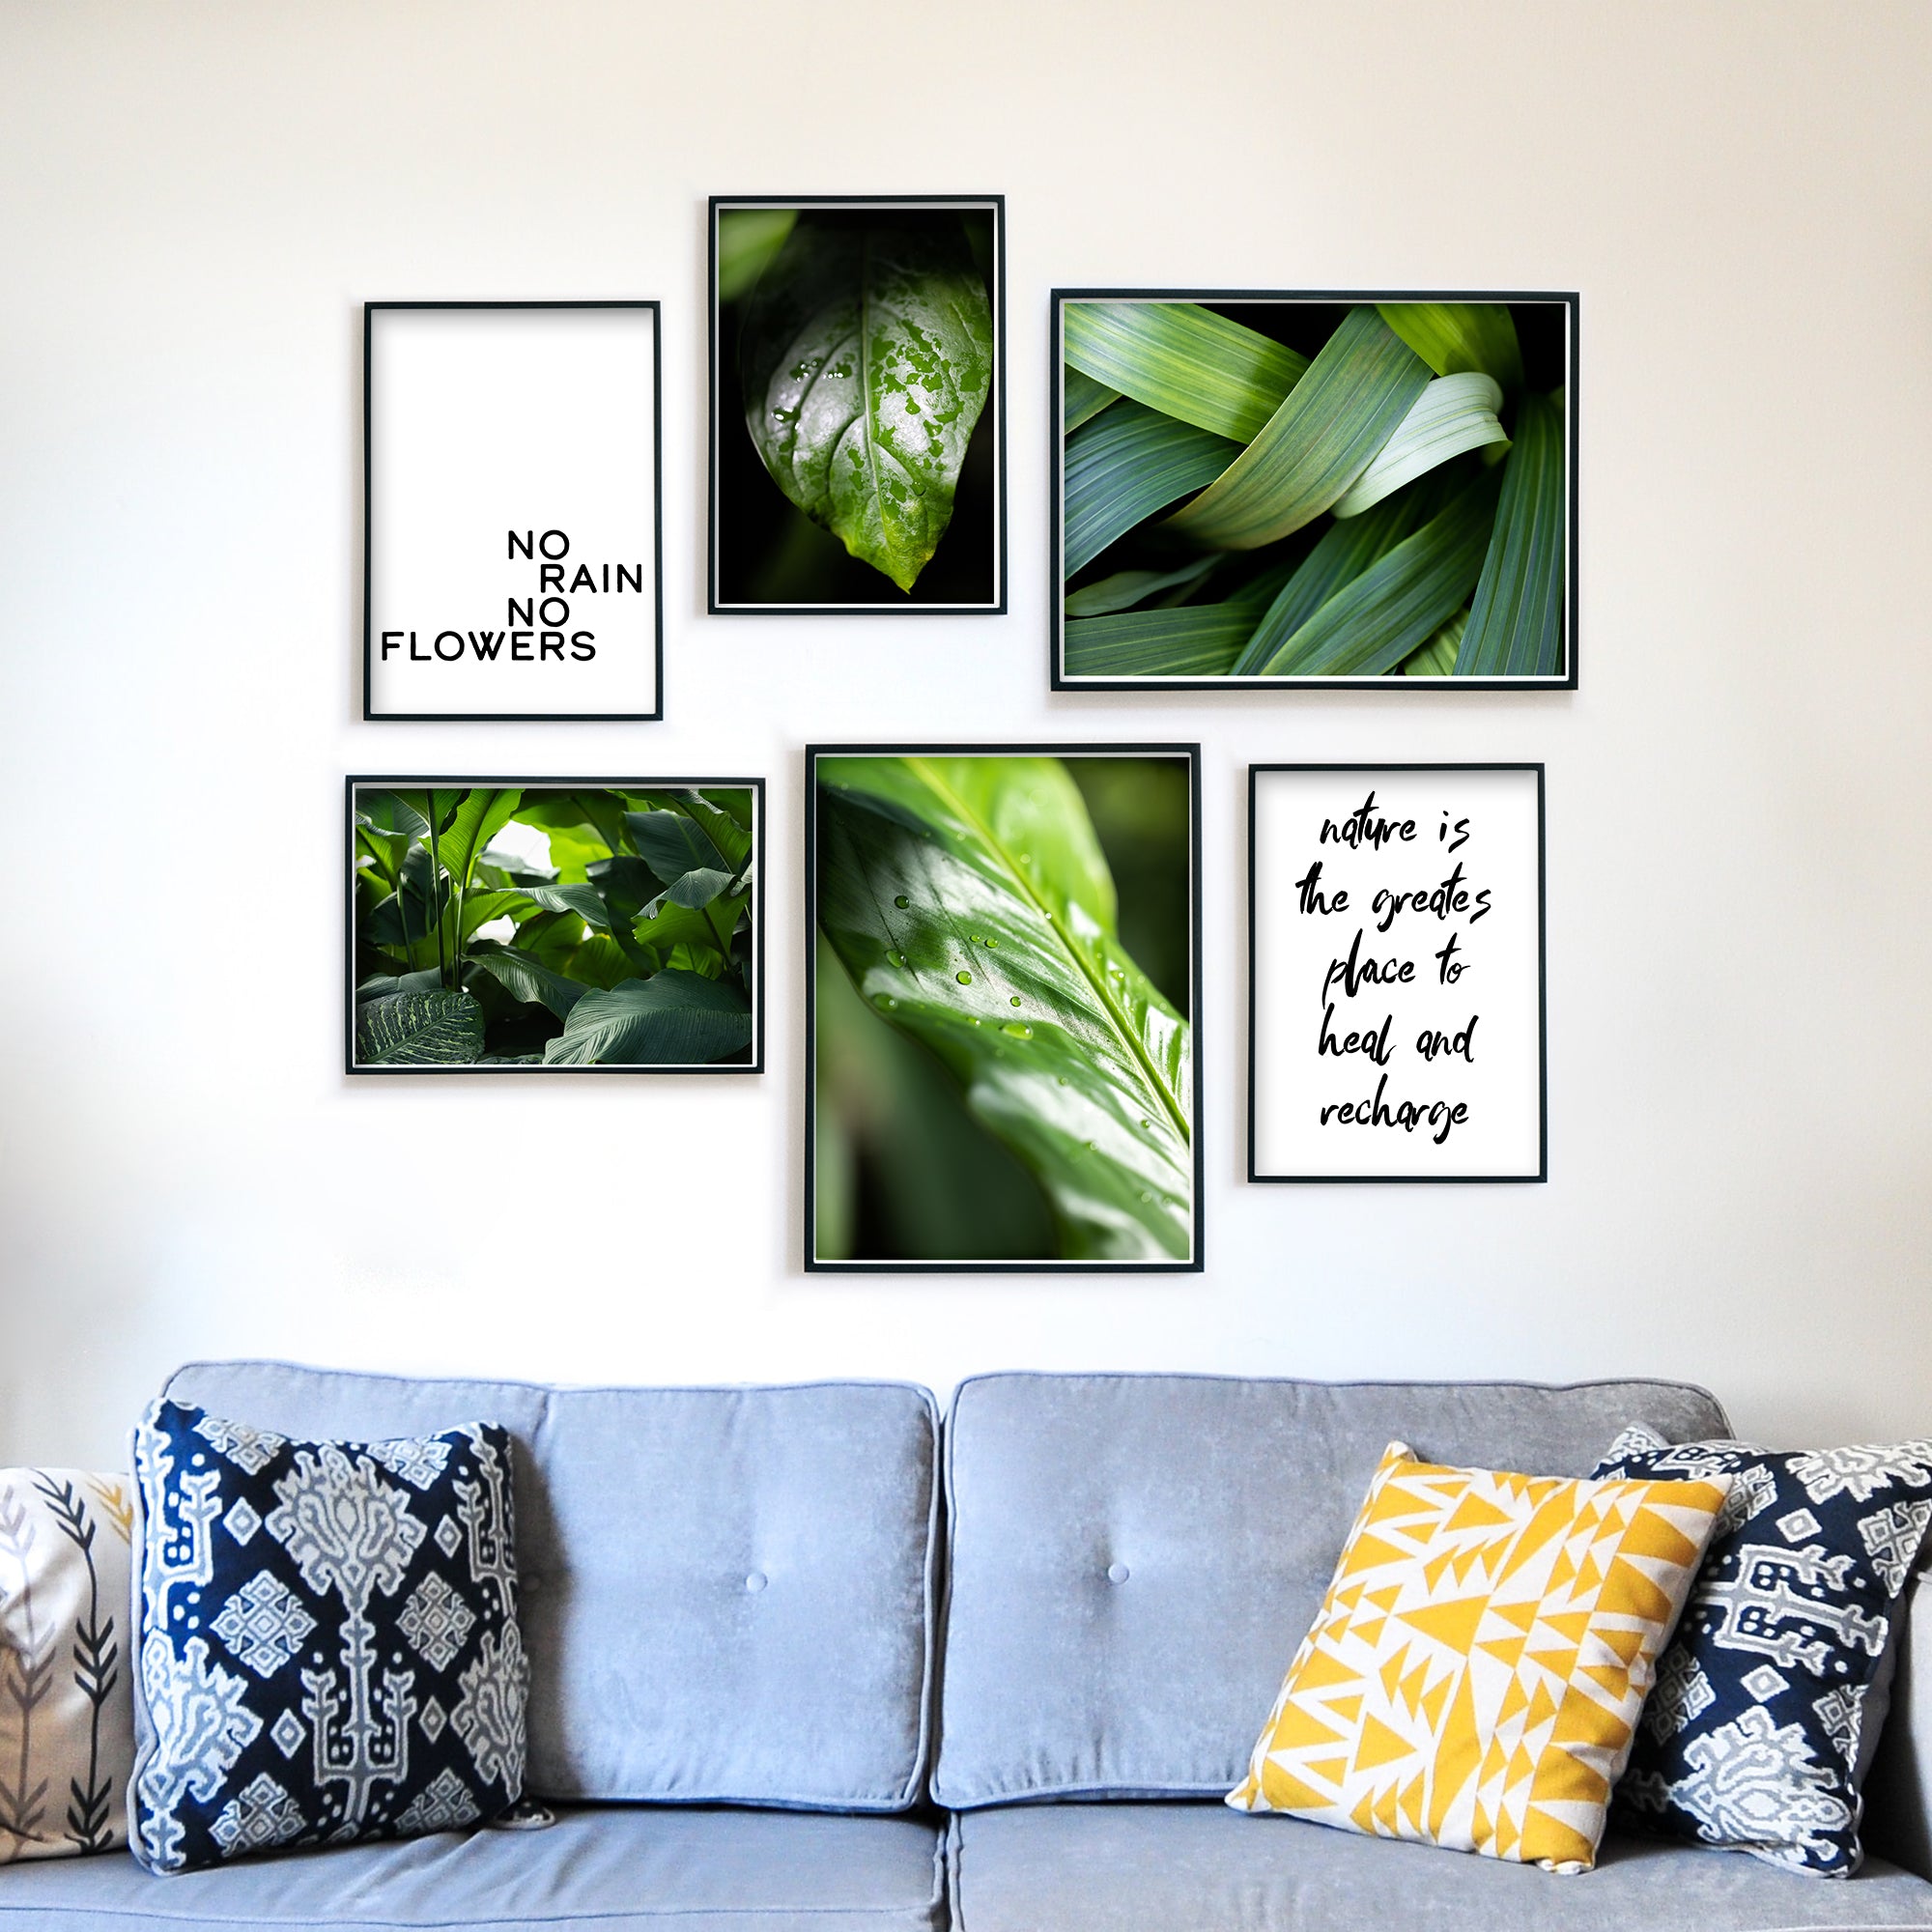 4one-pictures-6er-Set-Poster-Bilder-Natur-Pflanzen-Wohnzimmer-gruen-spruch-bilderrahmen-wanddeko.jpg